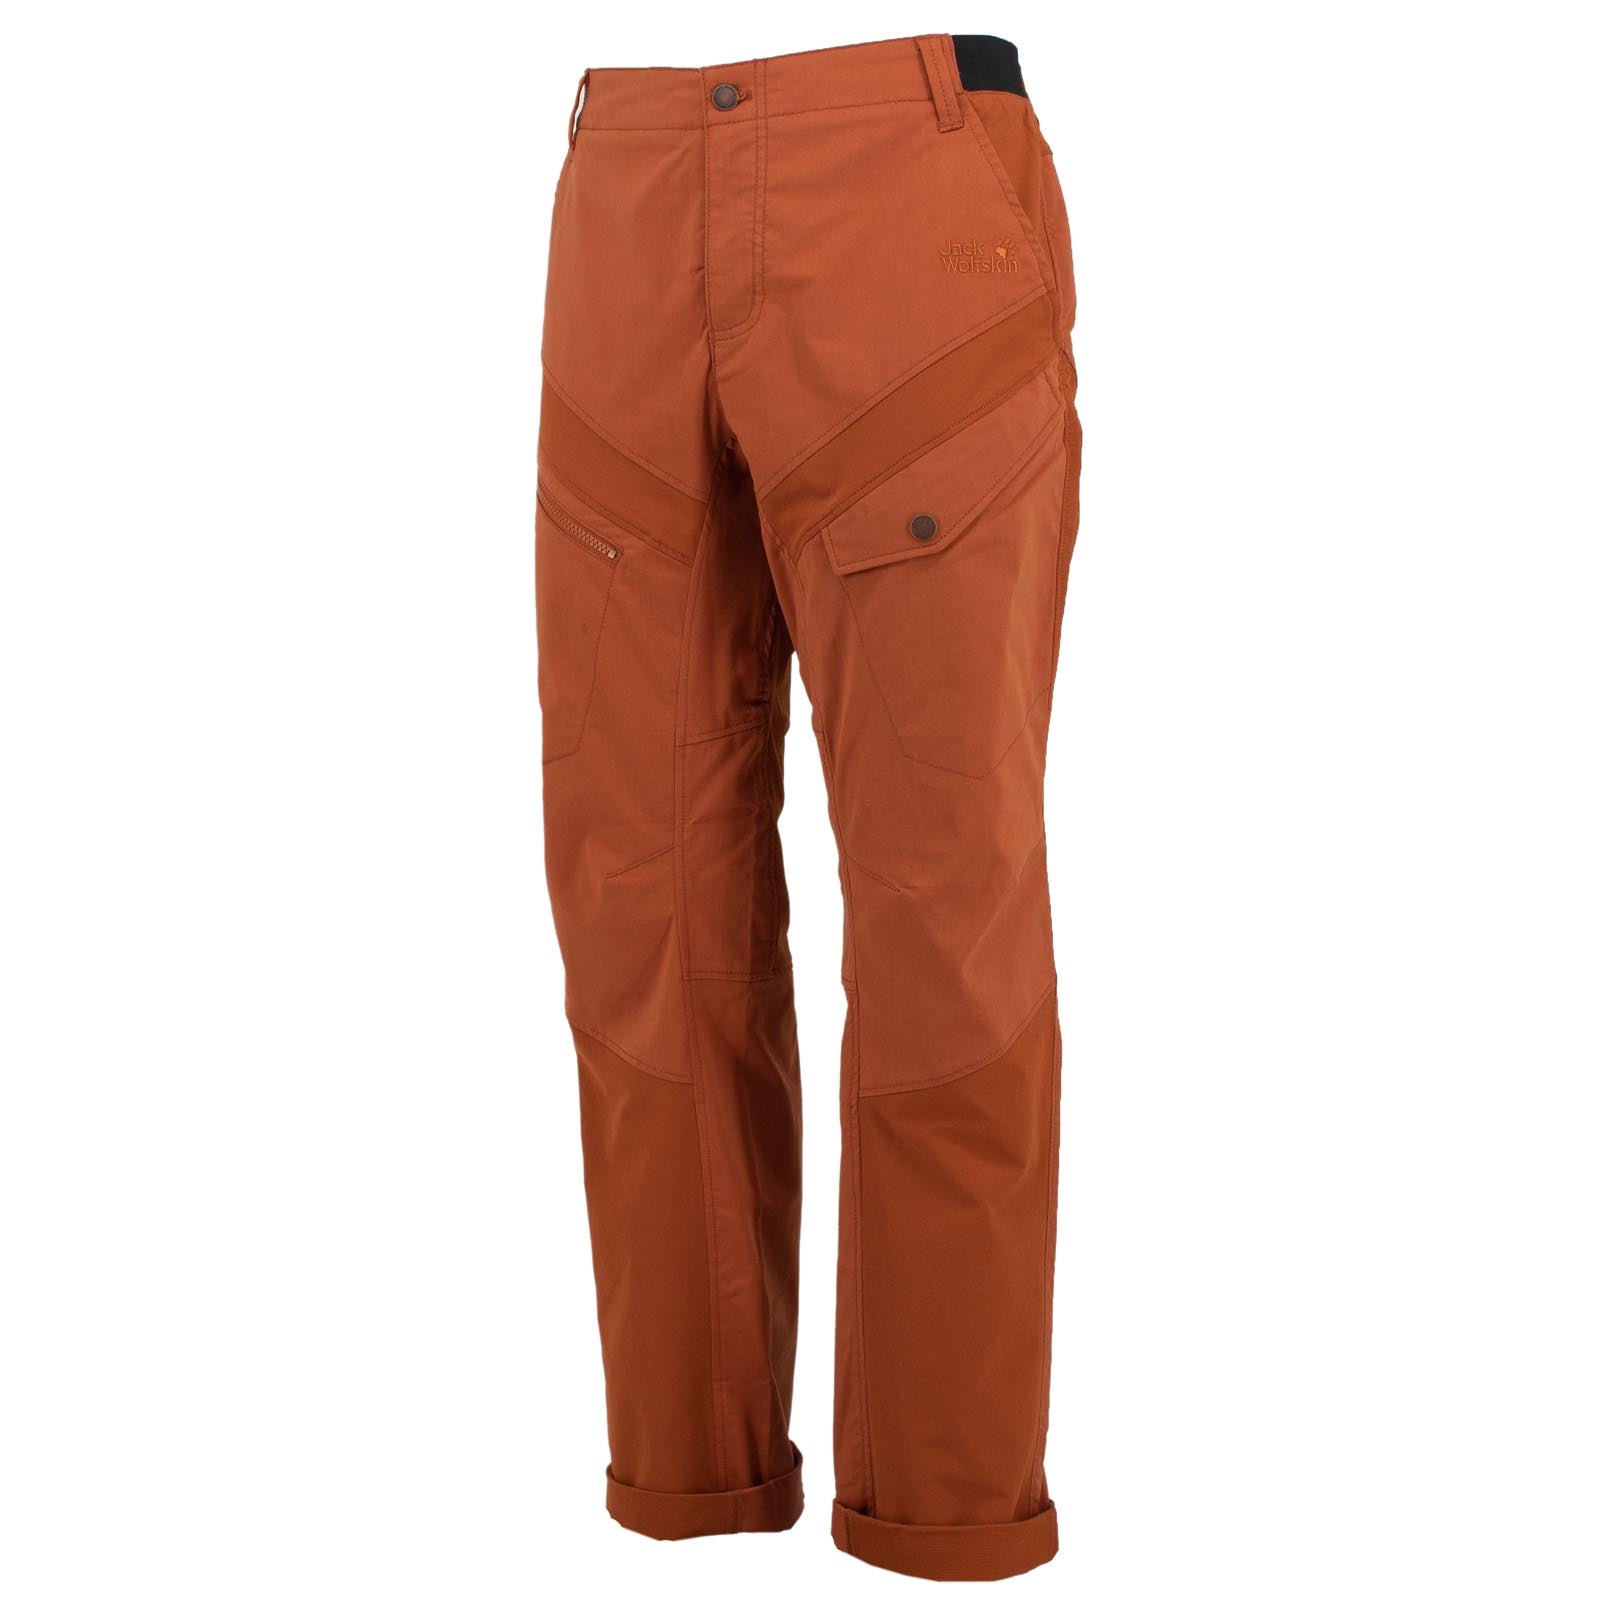 Jack Wolfskin Dover Road Cargo Pants Herren Outdoor Hose Braun 1506251-5090 50